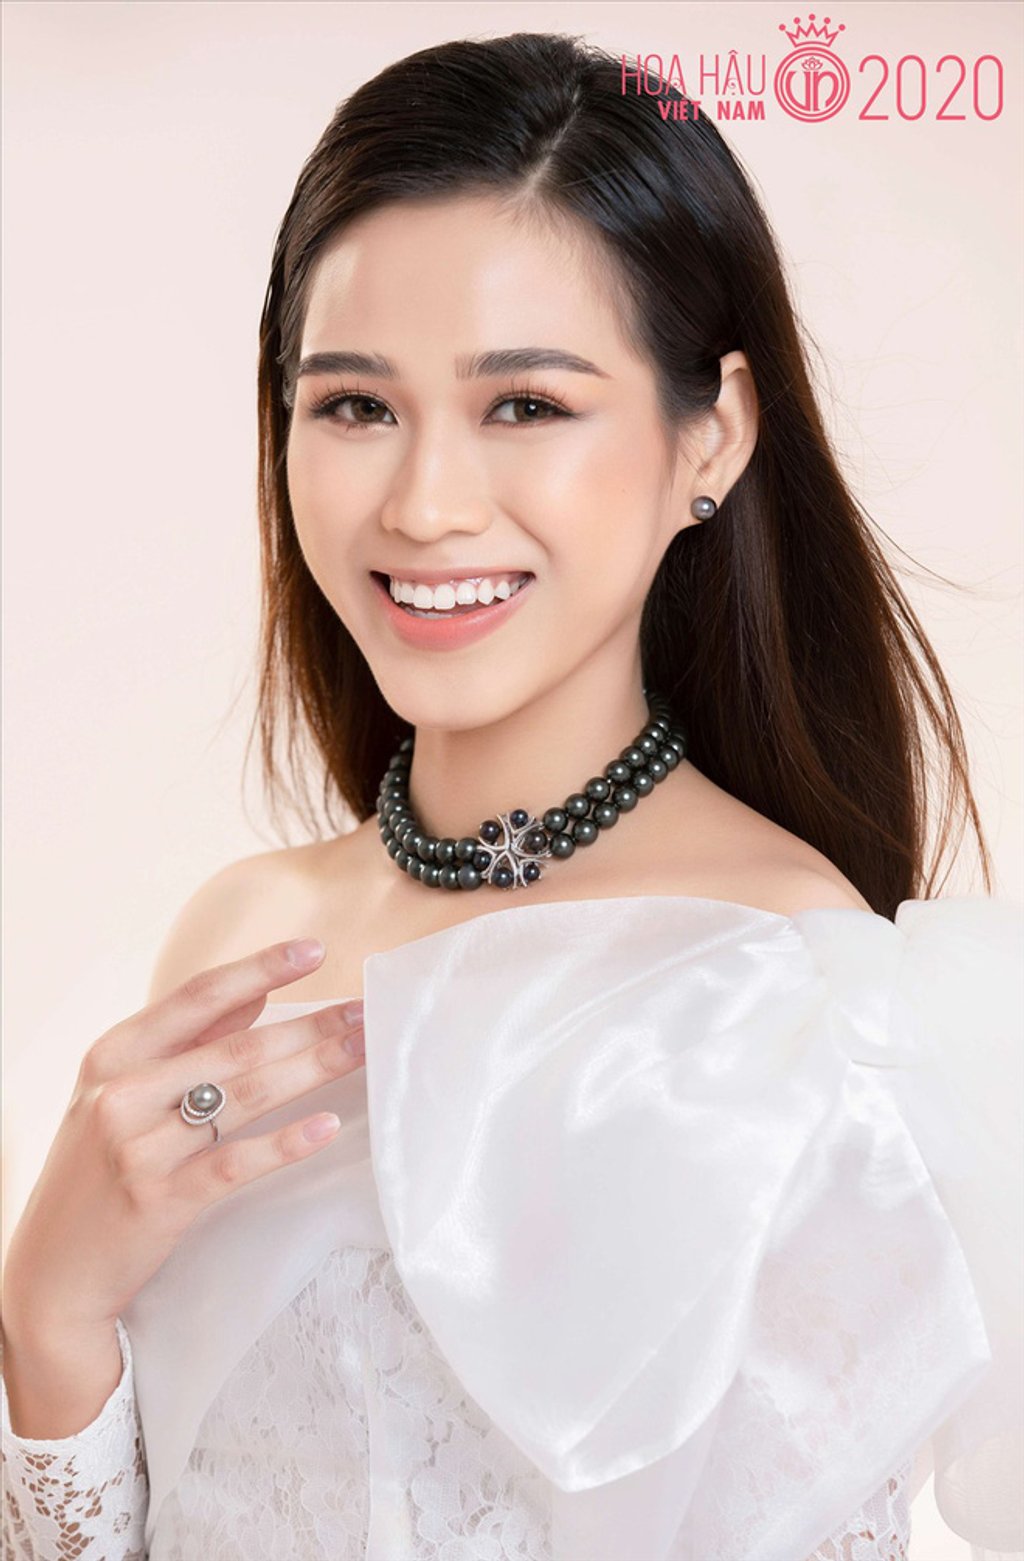 Trước khi đăng quang Hoa hậu Việt Nam 2020, Đỗ Thị Hà chuộng tone màu son đỏ, hồng hoặc hồng cam nhằm tôn vinh làn da sáng mịn